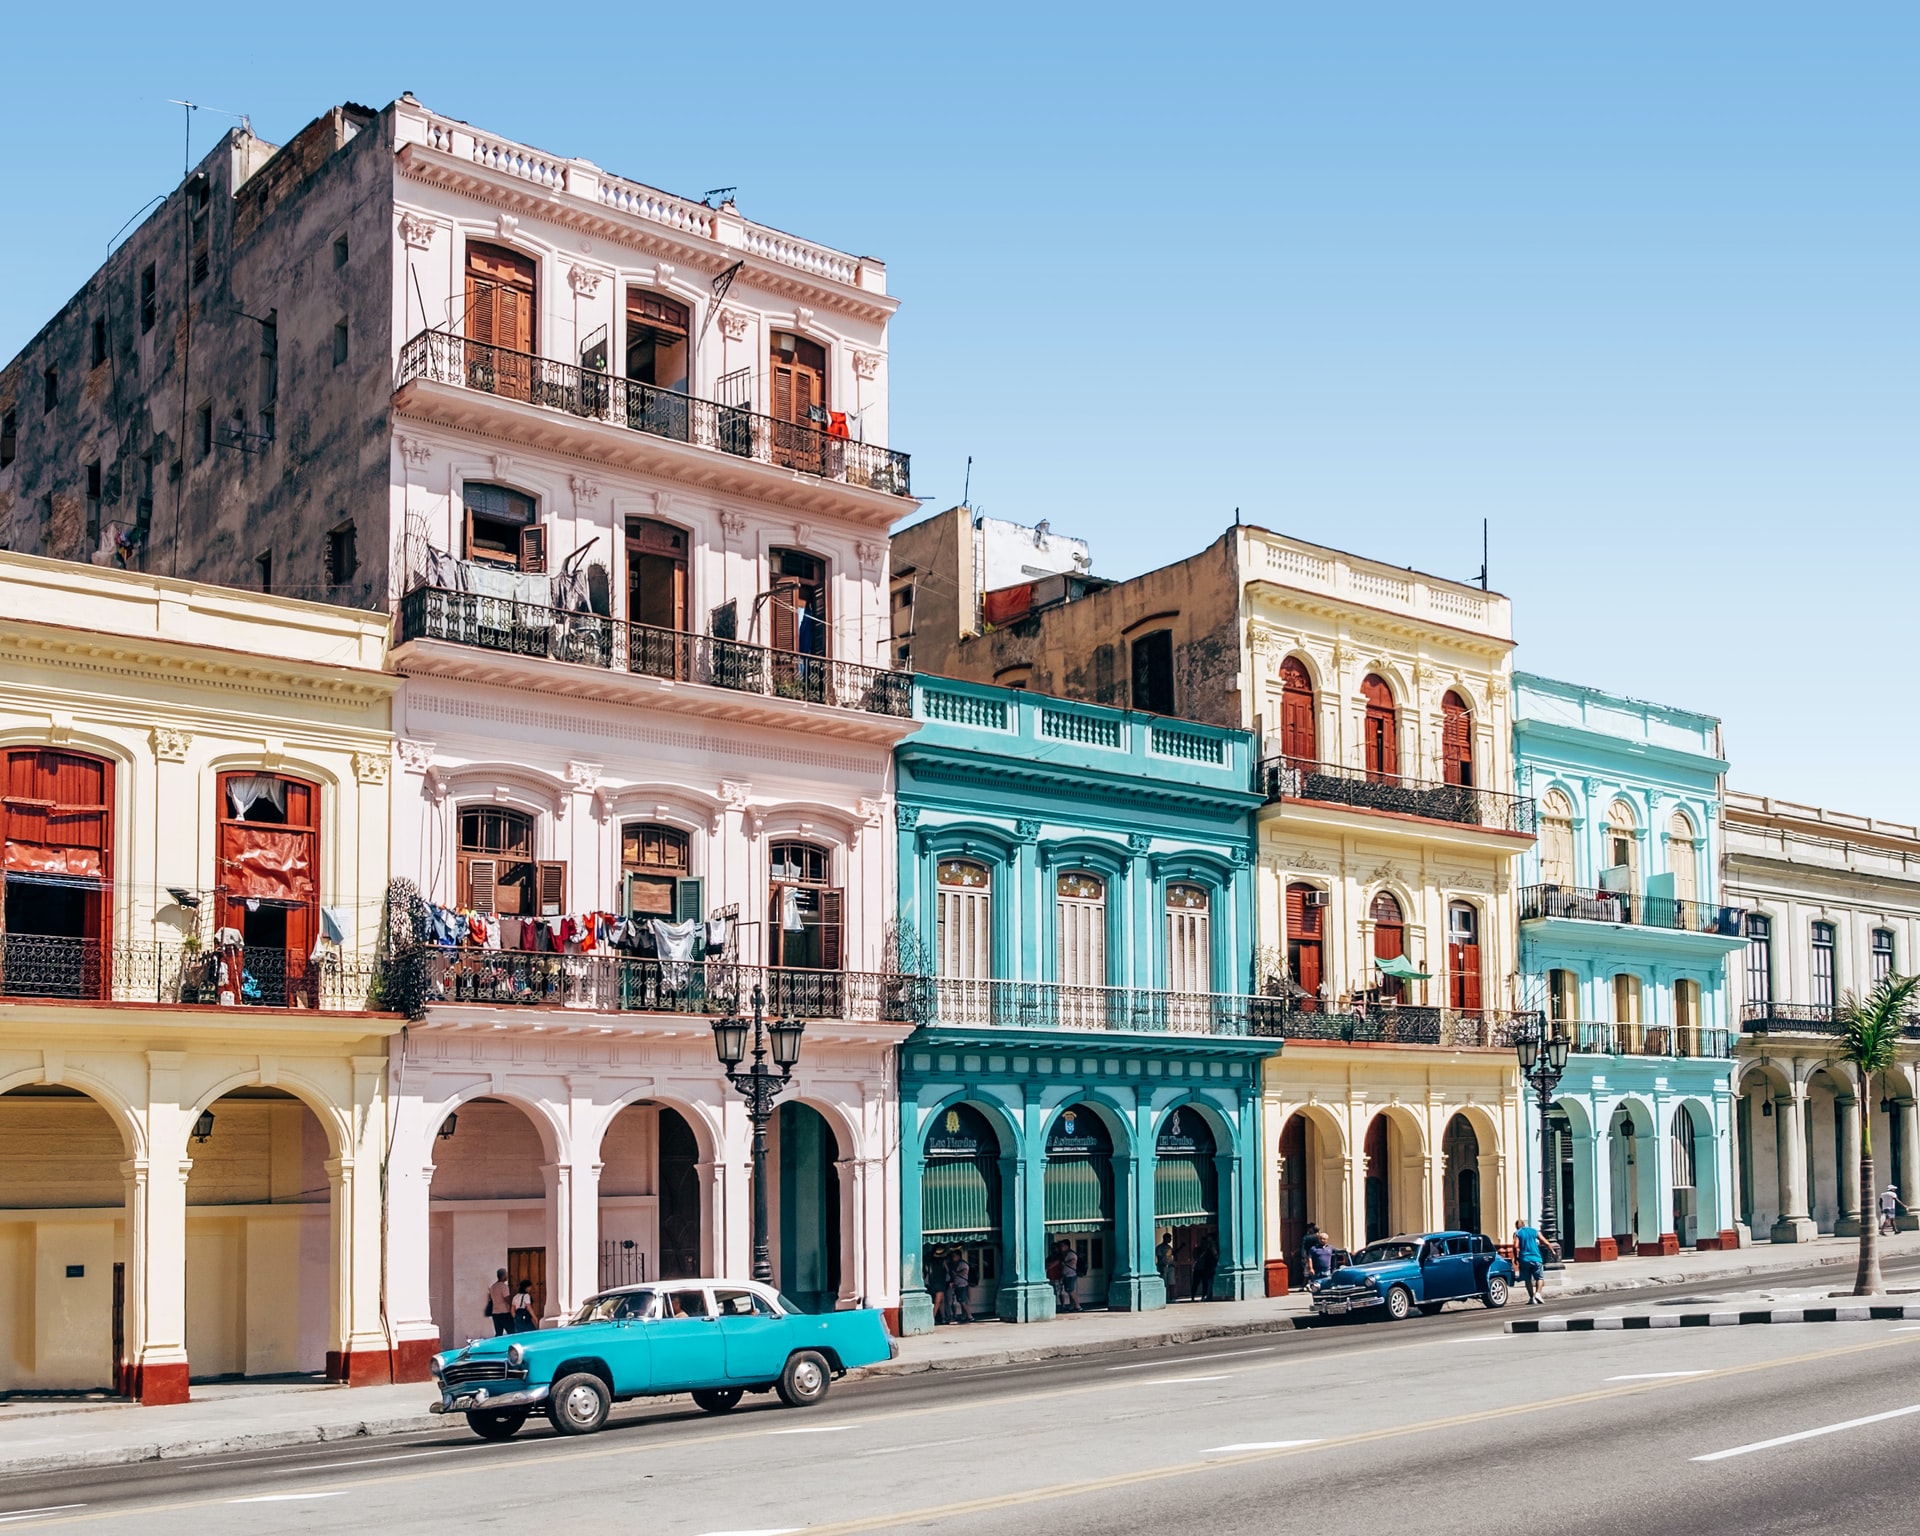 Tag på ferie i Cuba og oplev de smukke bygninger